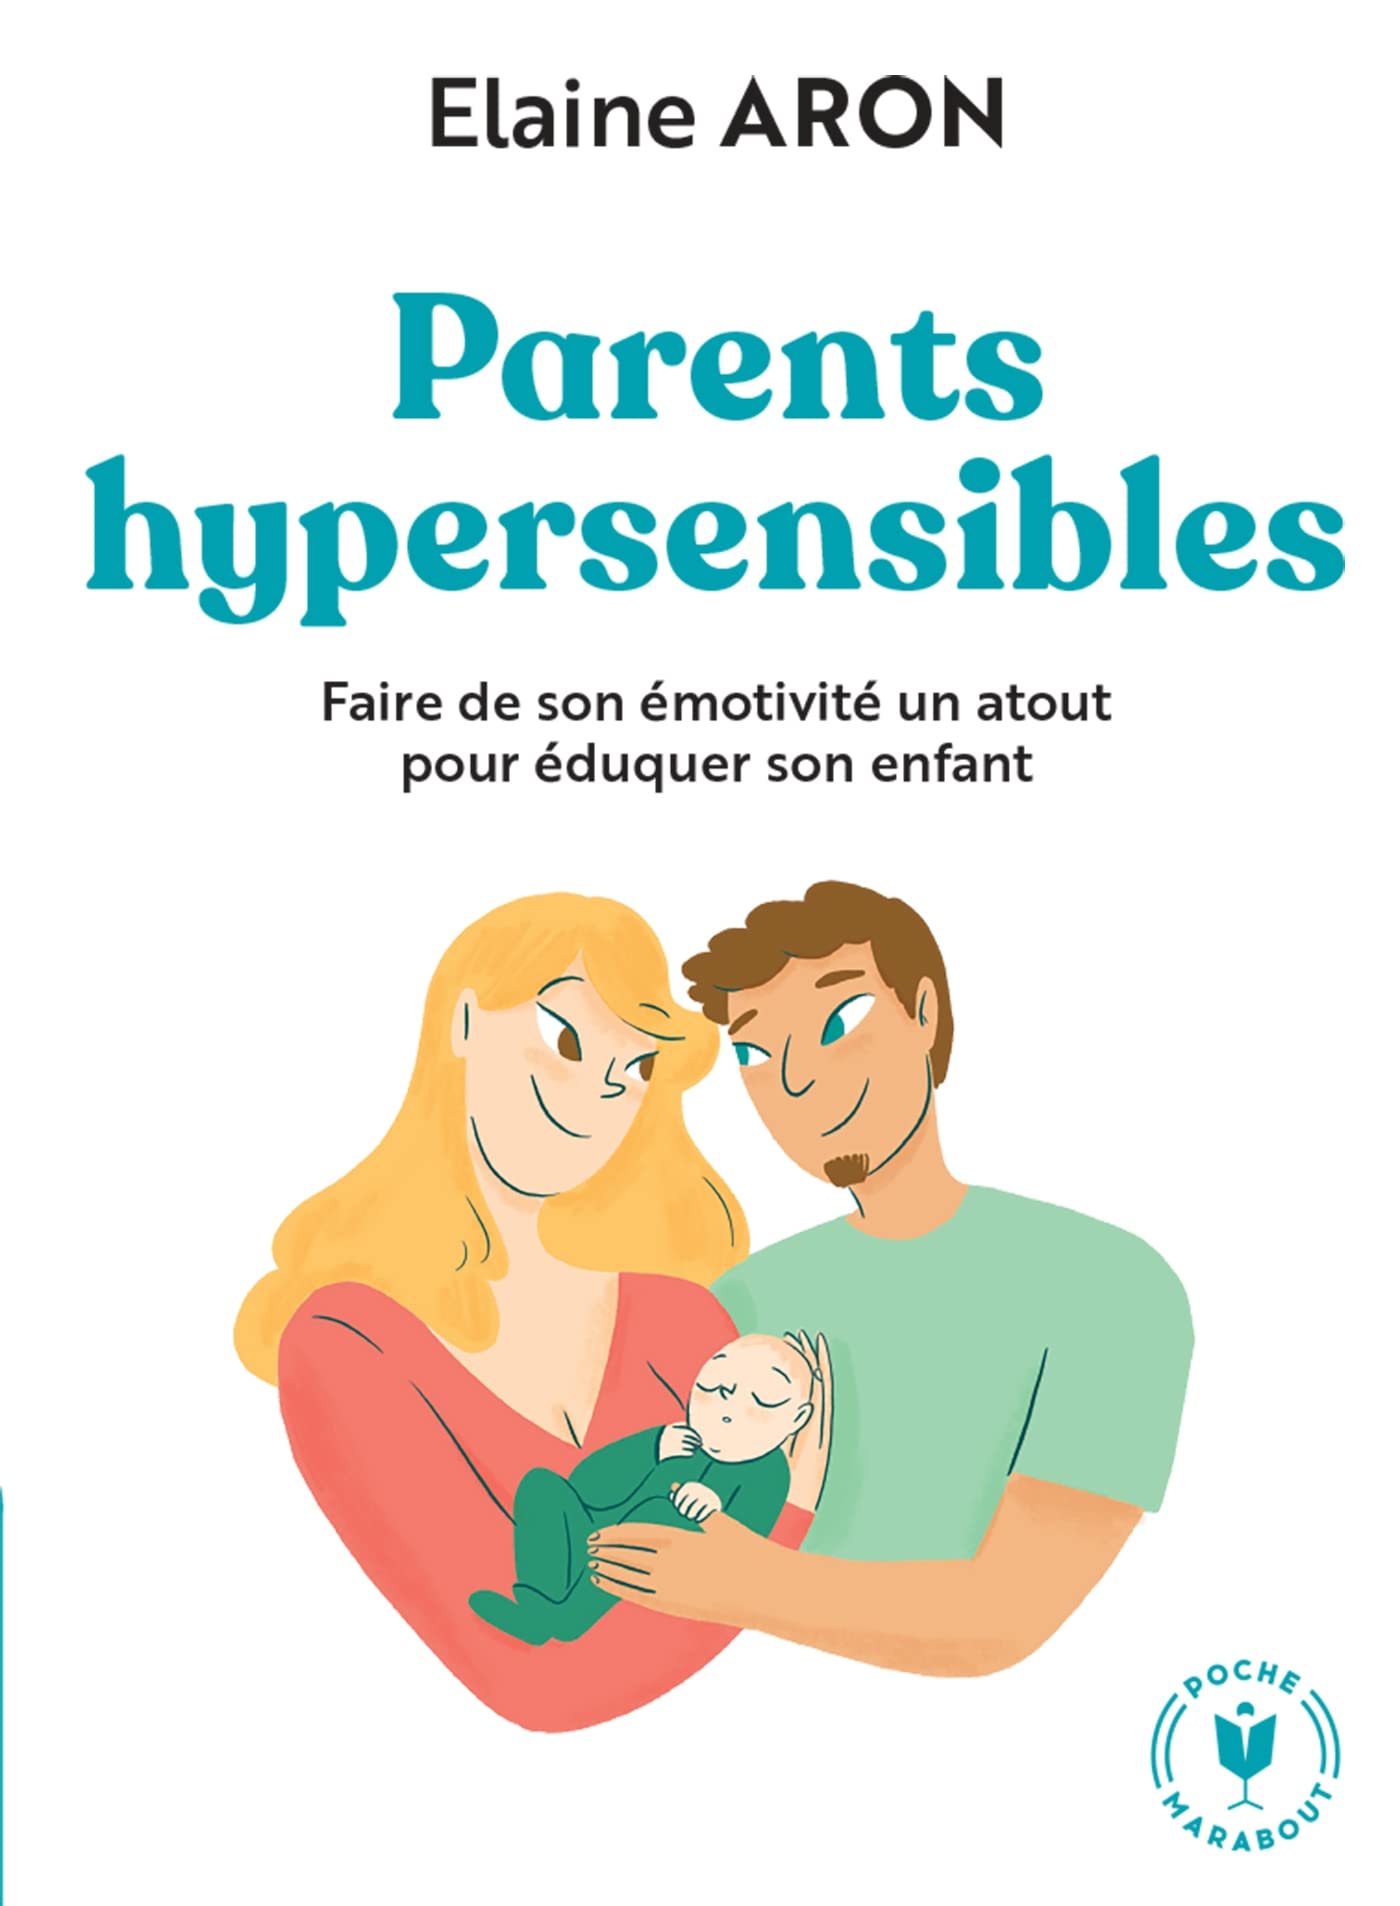 Parents hypersensibles: Faire de son émotivité un atout pour éduquer son enfant